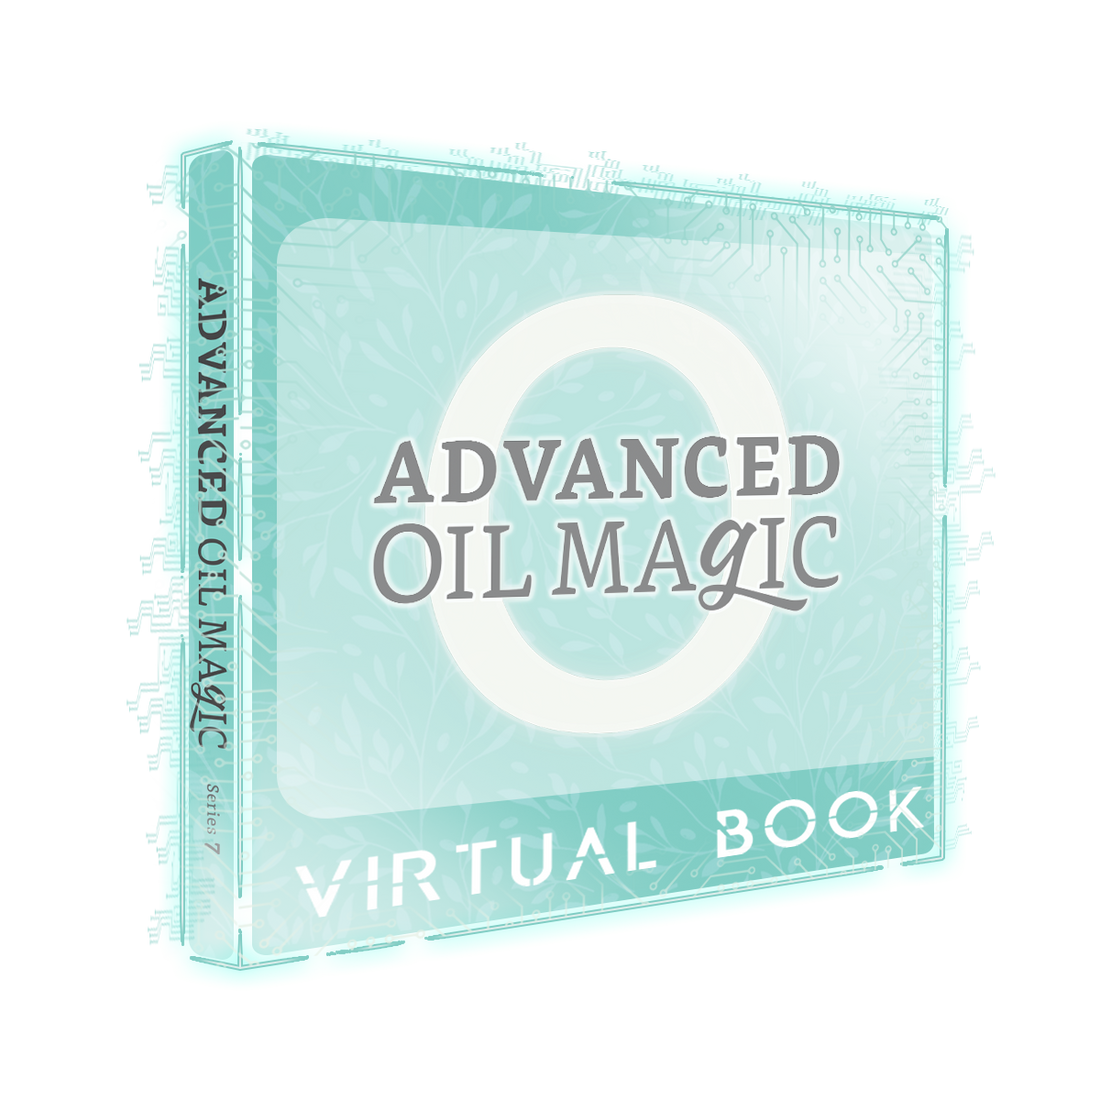 ADVANCED Oil Magic Series 7 [Virtual Book]